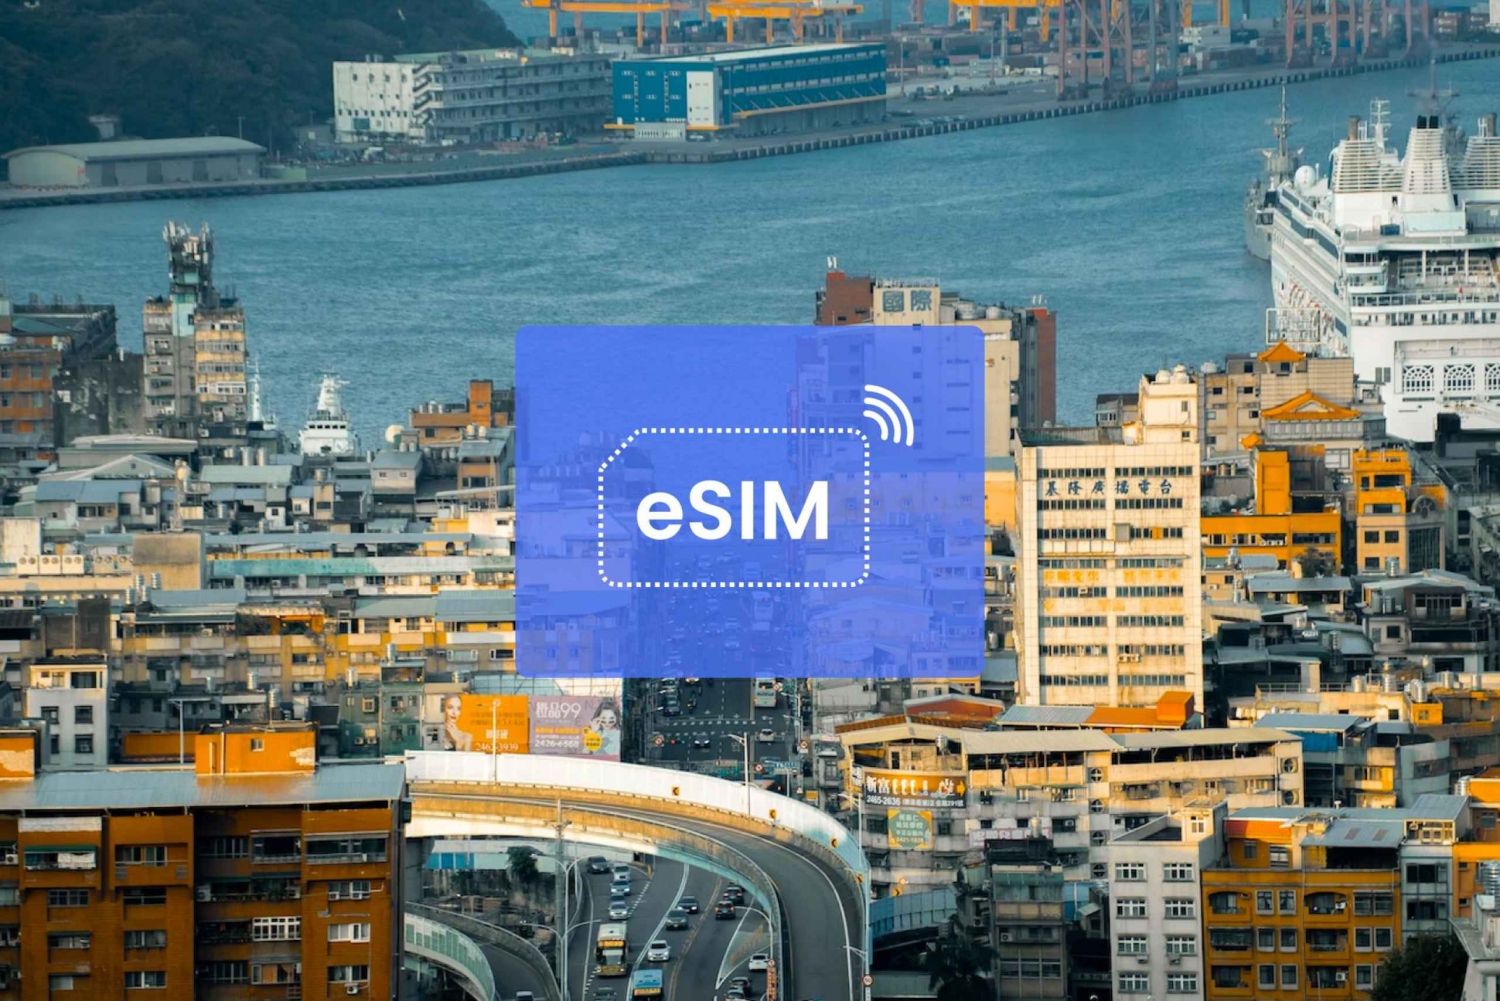 Keelung: Taiwan/ Asia eSIM Roaming Mobile Data Plan